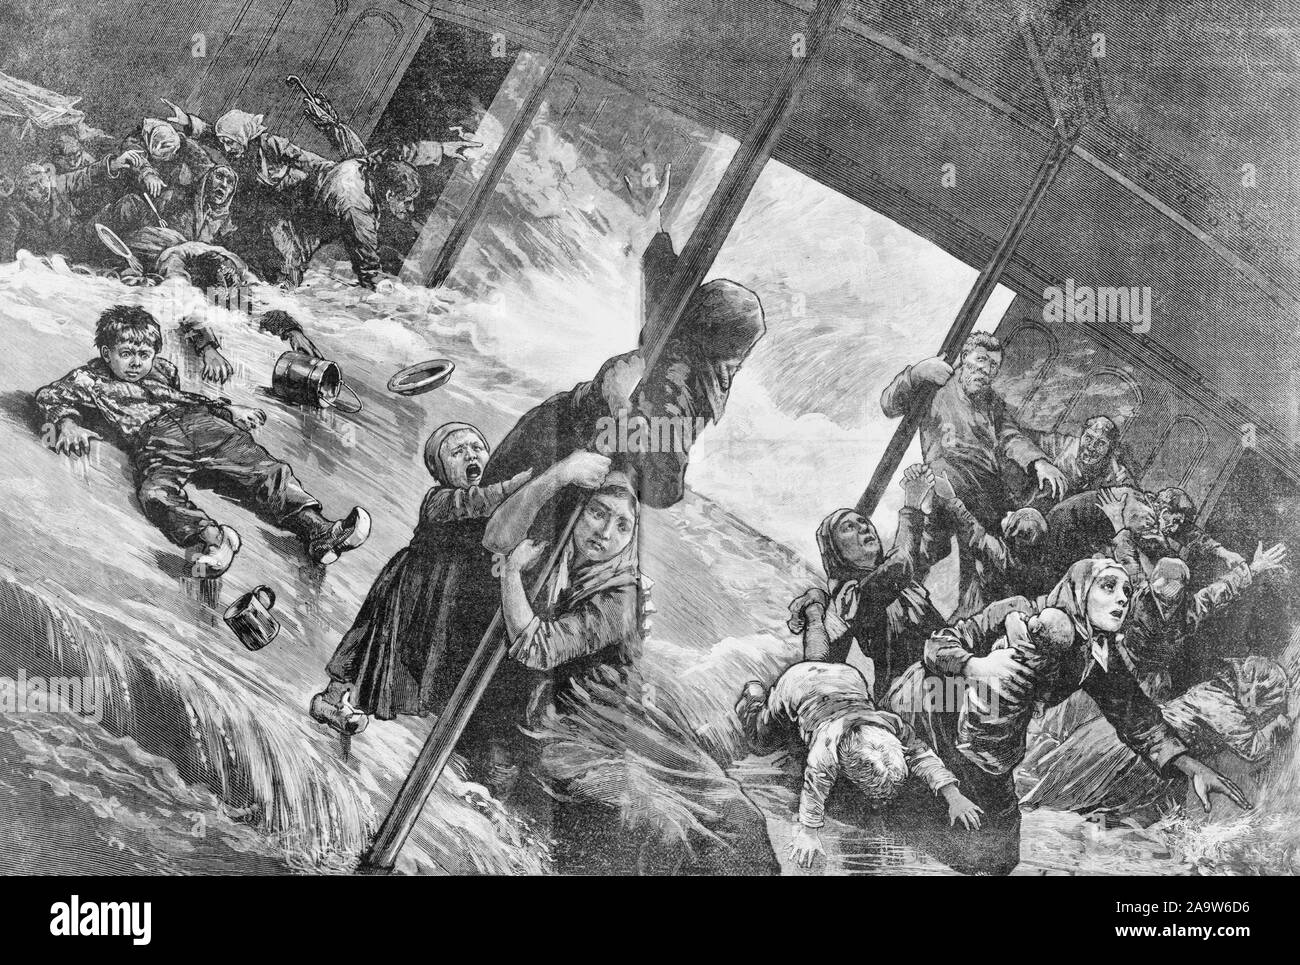 Entre les ponts d'un bateau à vapeur de l'océan pendant une tempête - une expédition mer lourde - aux gens d'inclinaison sur le plancher d'un bateau à vapeur de l'océan pendant une tempête, vers 1885 Banque D'Images